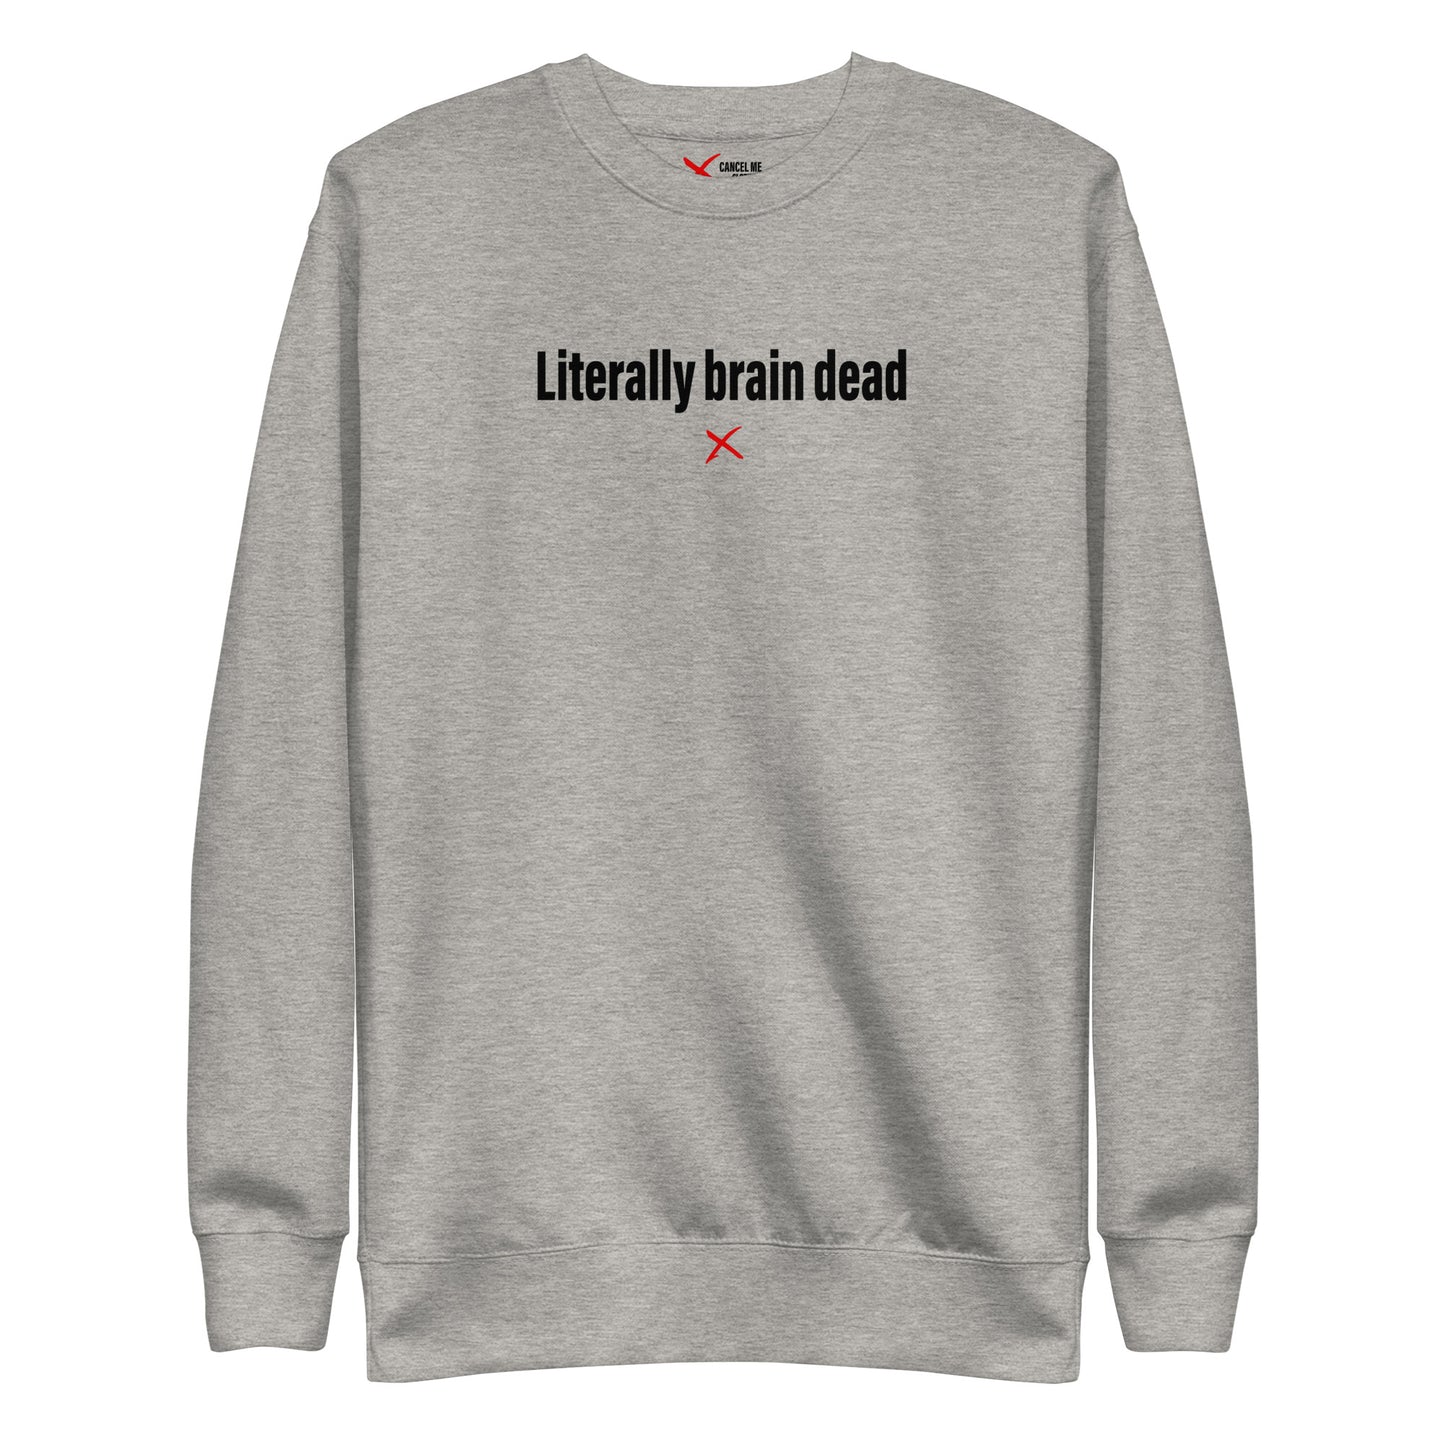 Literally brain dead - Sweatshirt